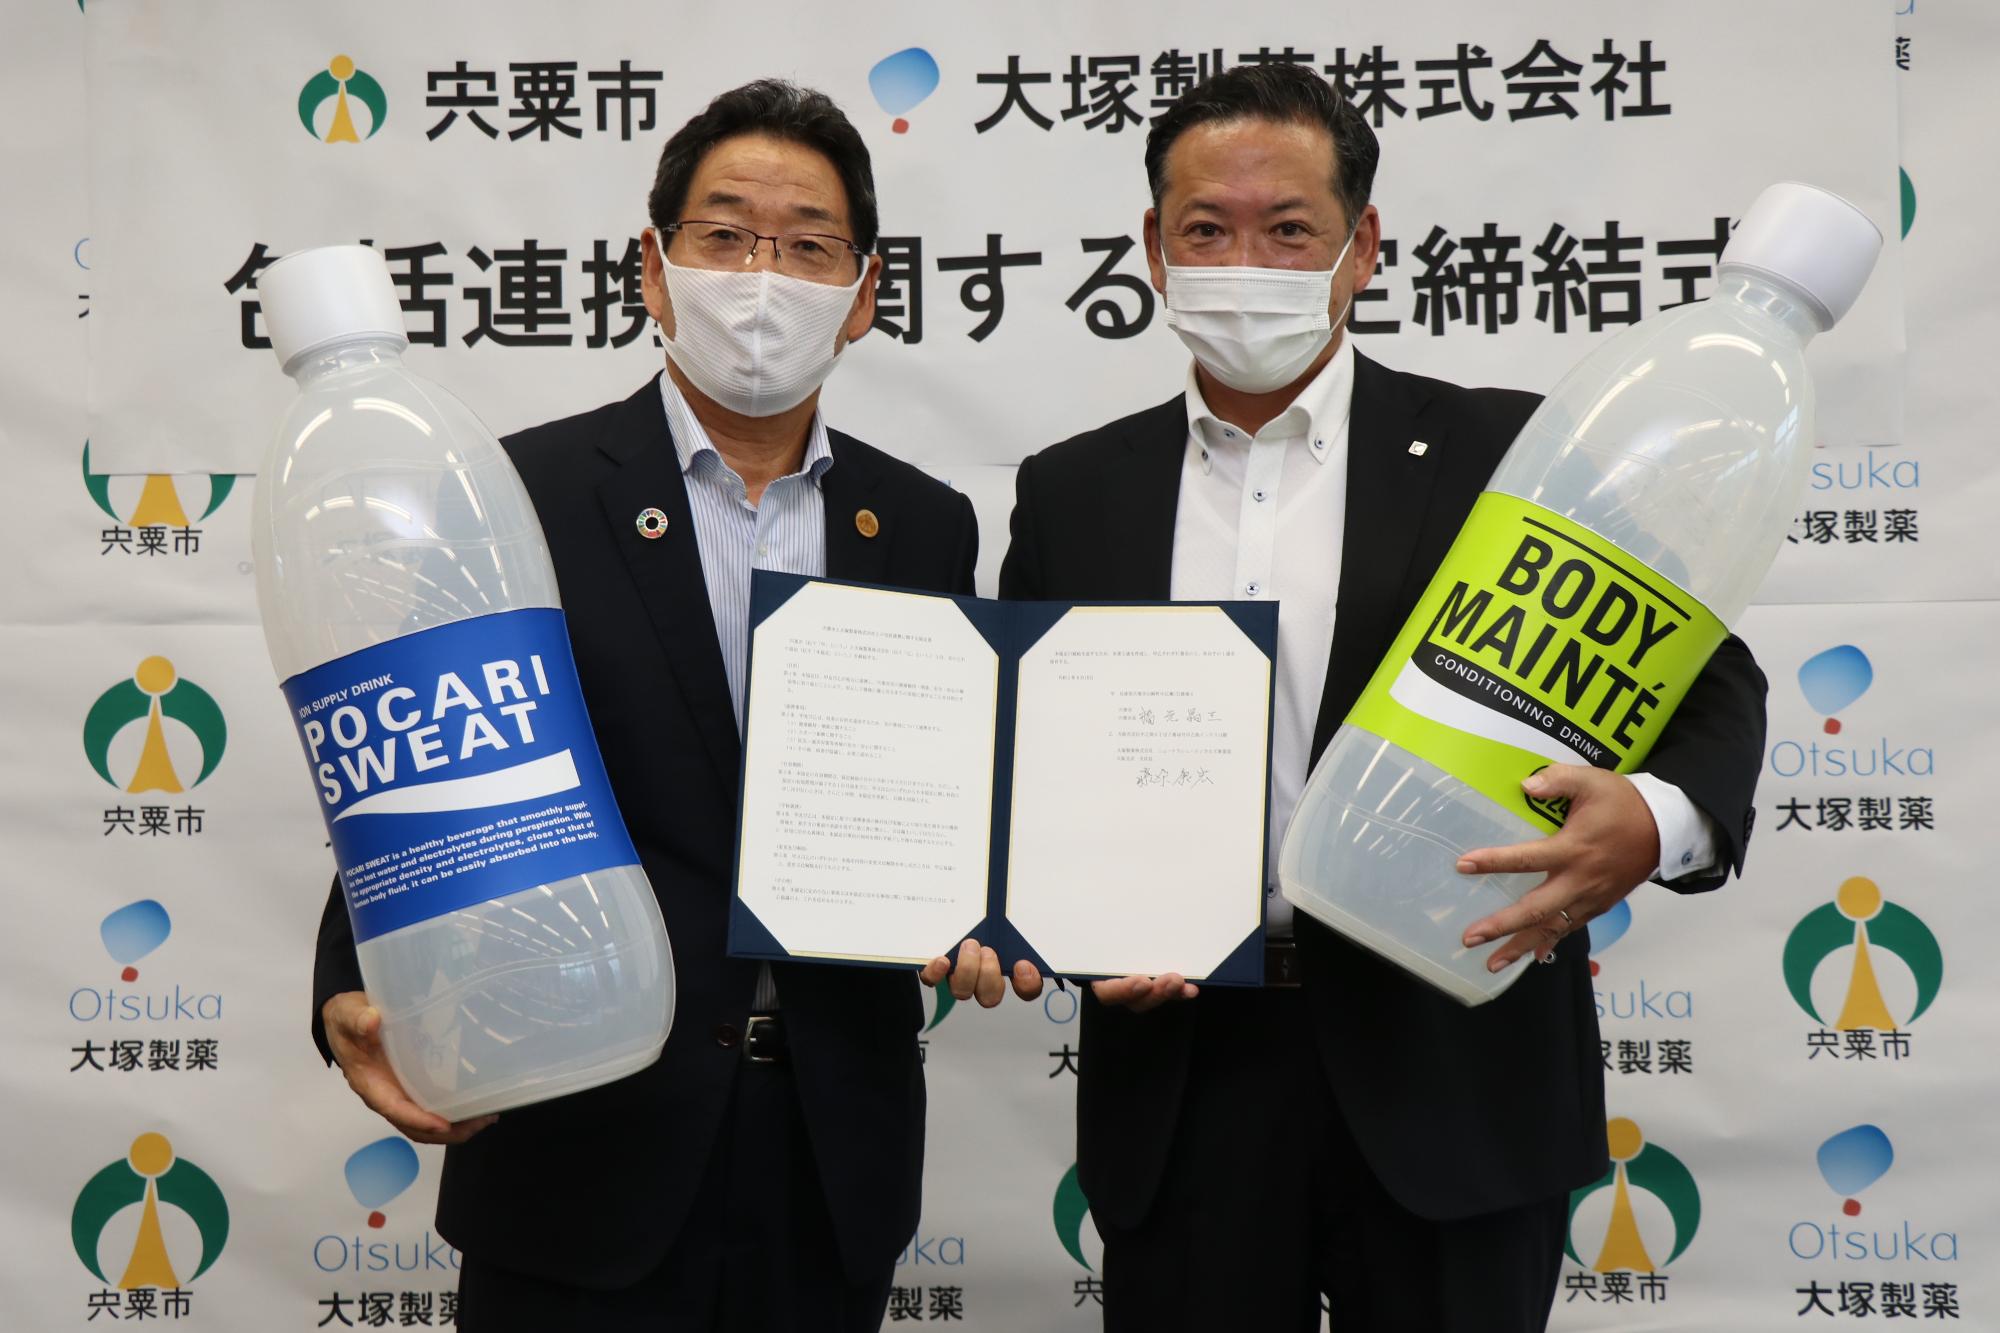 協定書を持つ福元市長と大塚製薬の大阪支店長藤原康宏さんが大きなポカリスエットの模型などを持って並んでいる写真